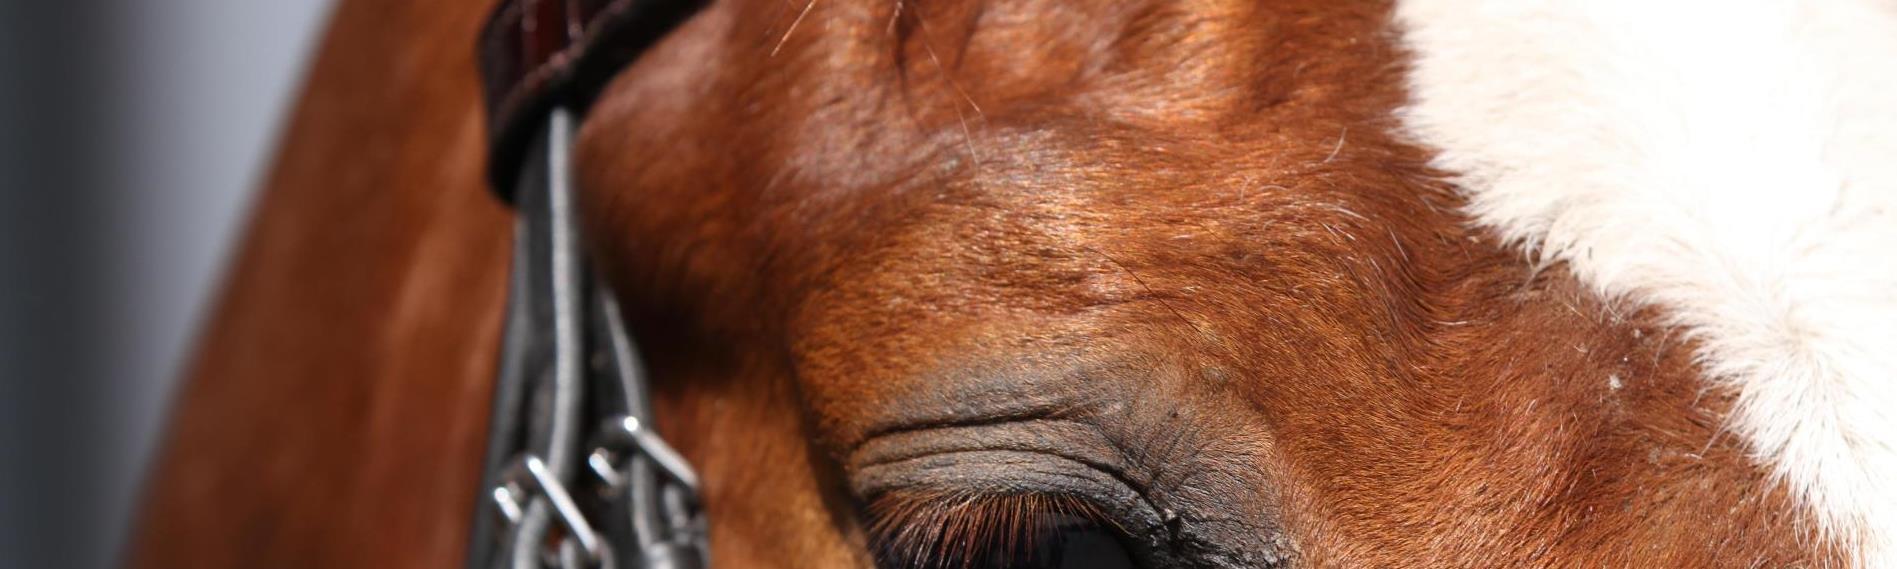 Aeres MBO Paardenhouderij close up paardenhoofd